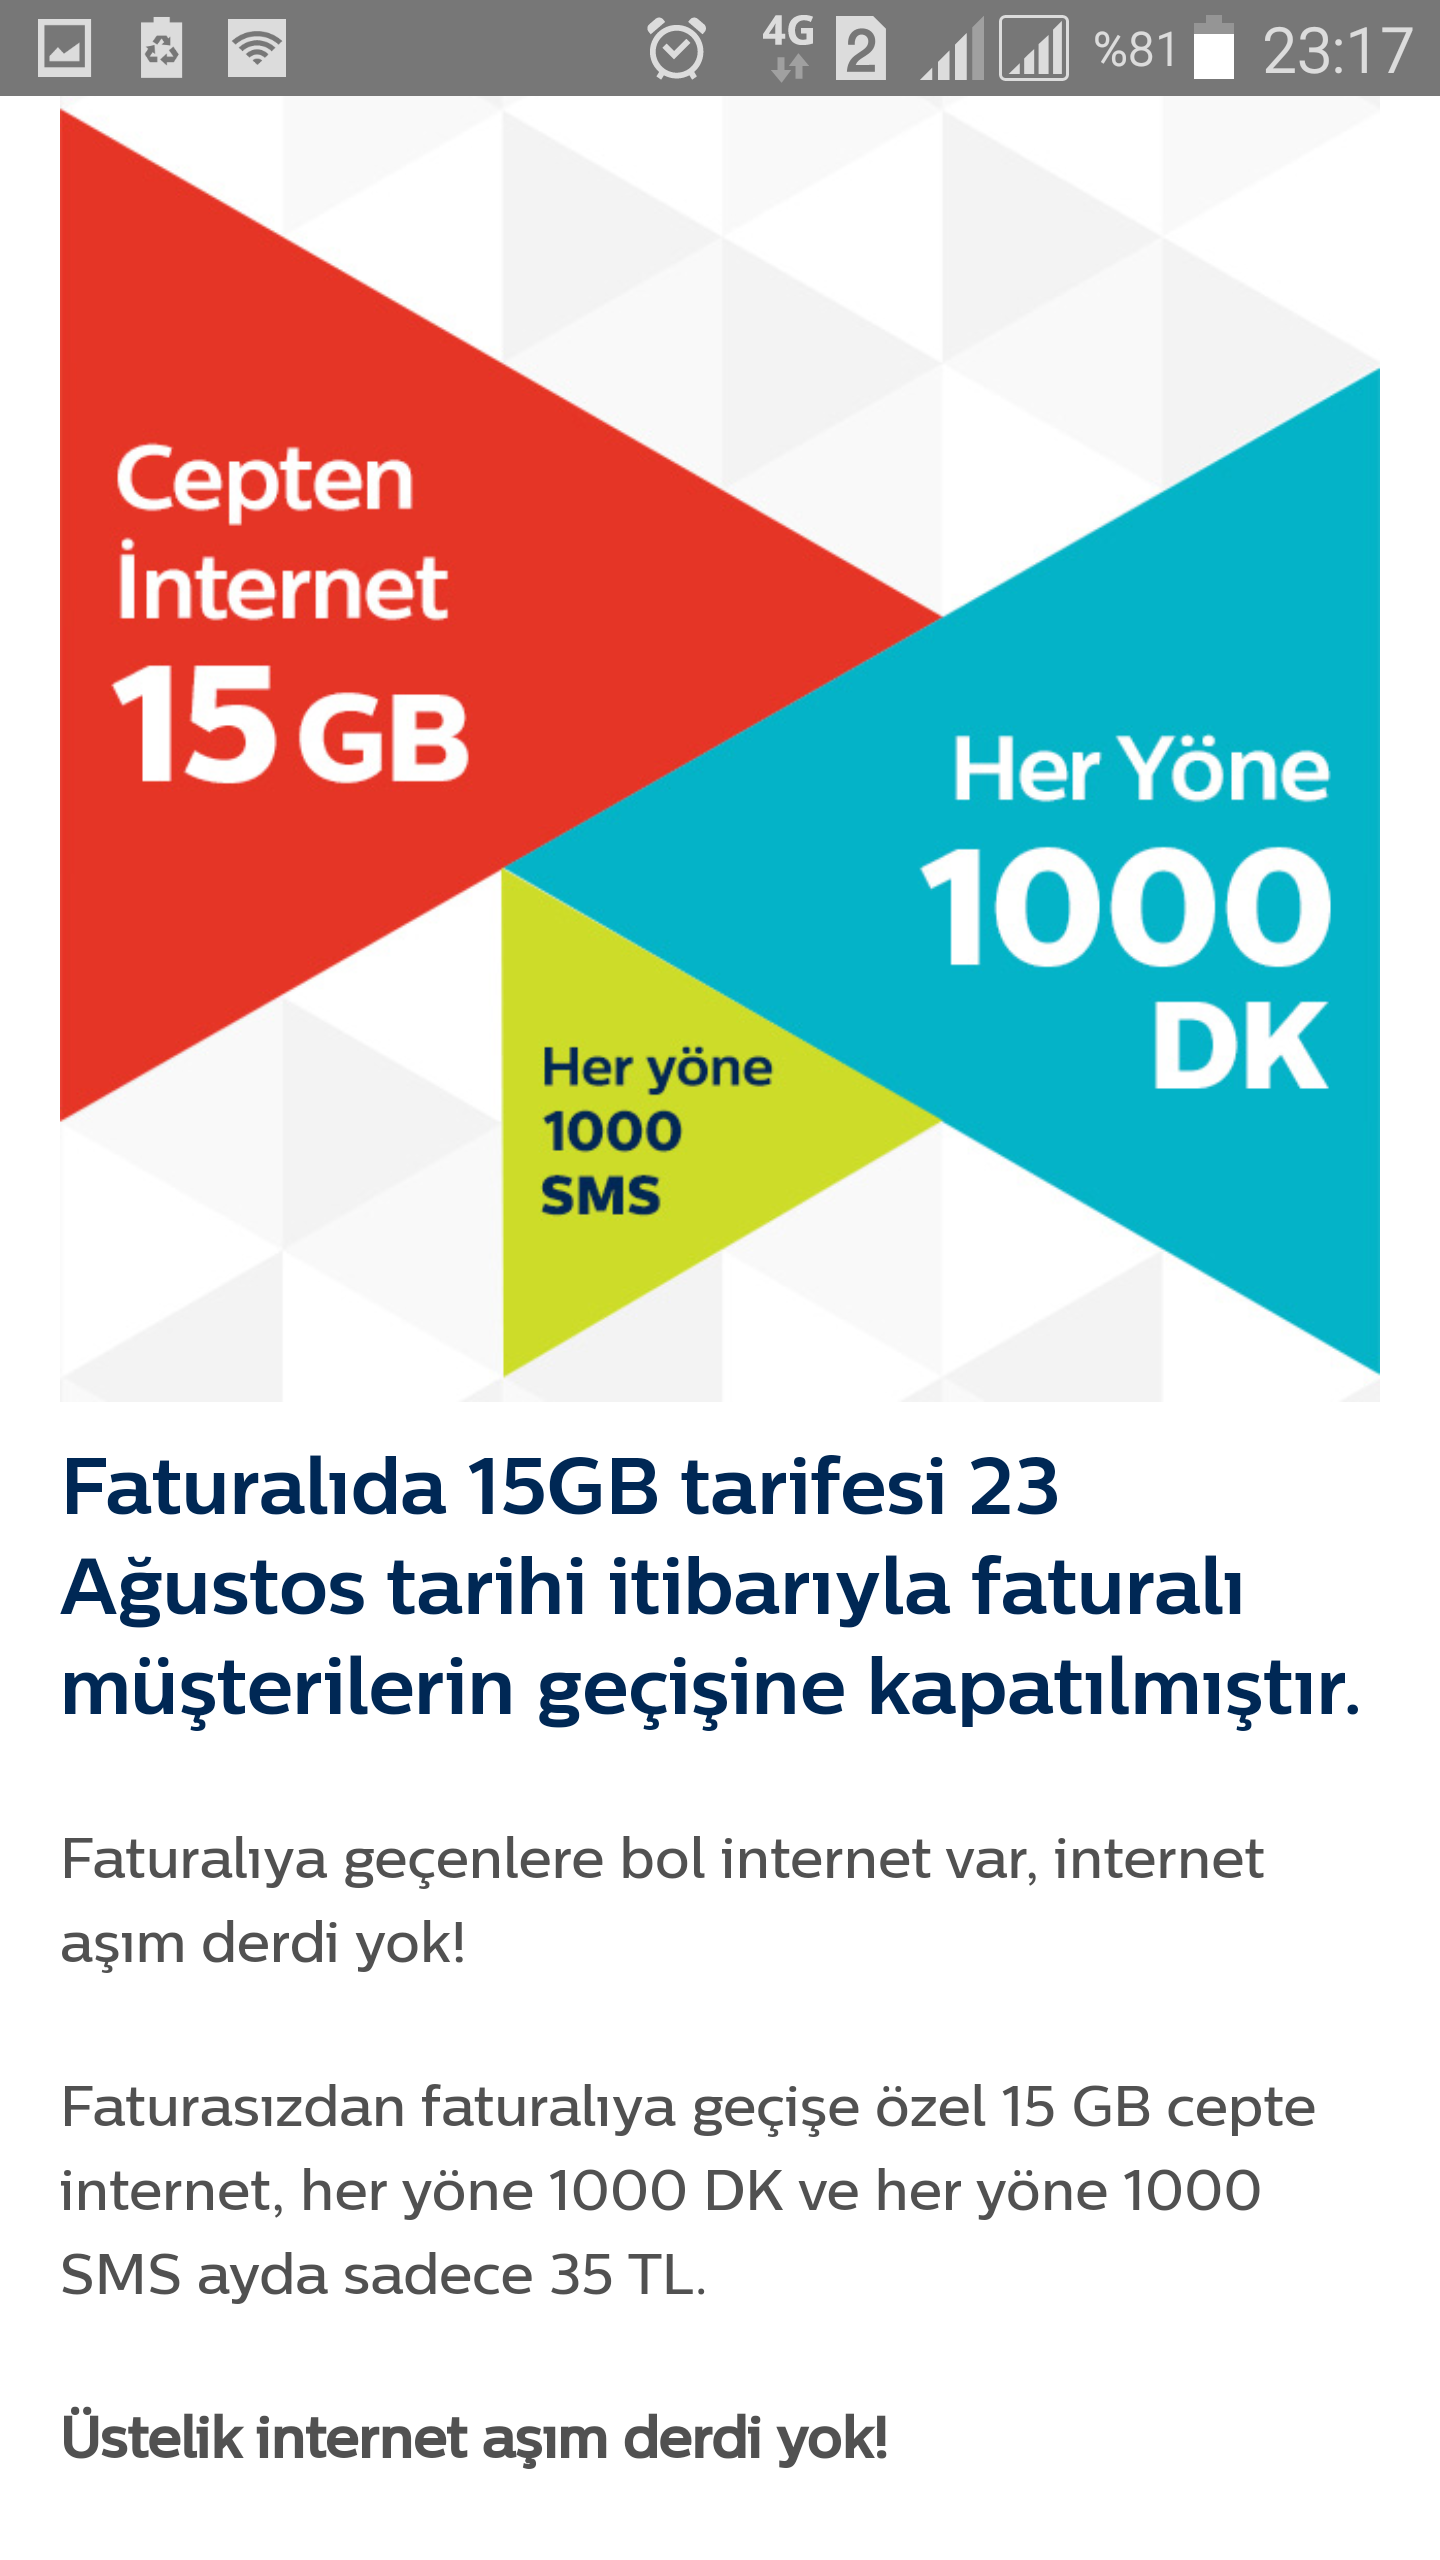 turk telekom faturalida 15gb 35tl 39tl oldu tarifesi kullananlar kulubu donanimhaber forum